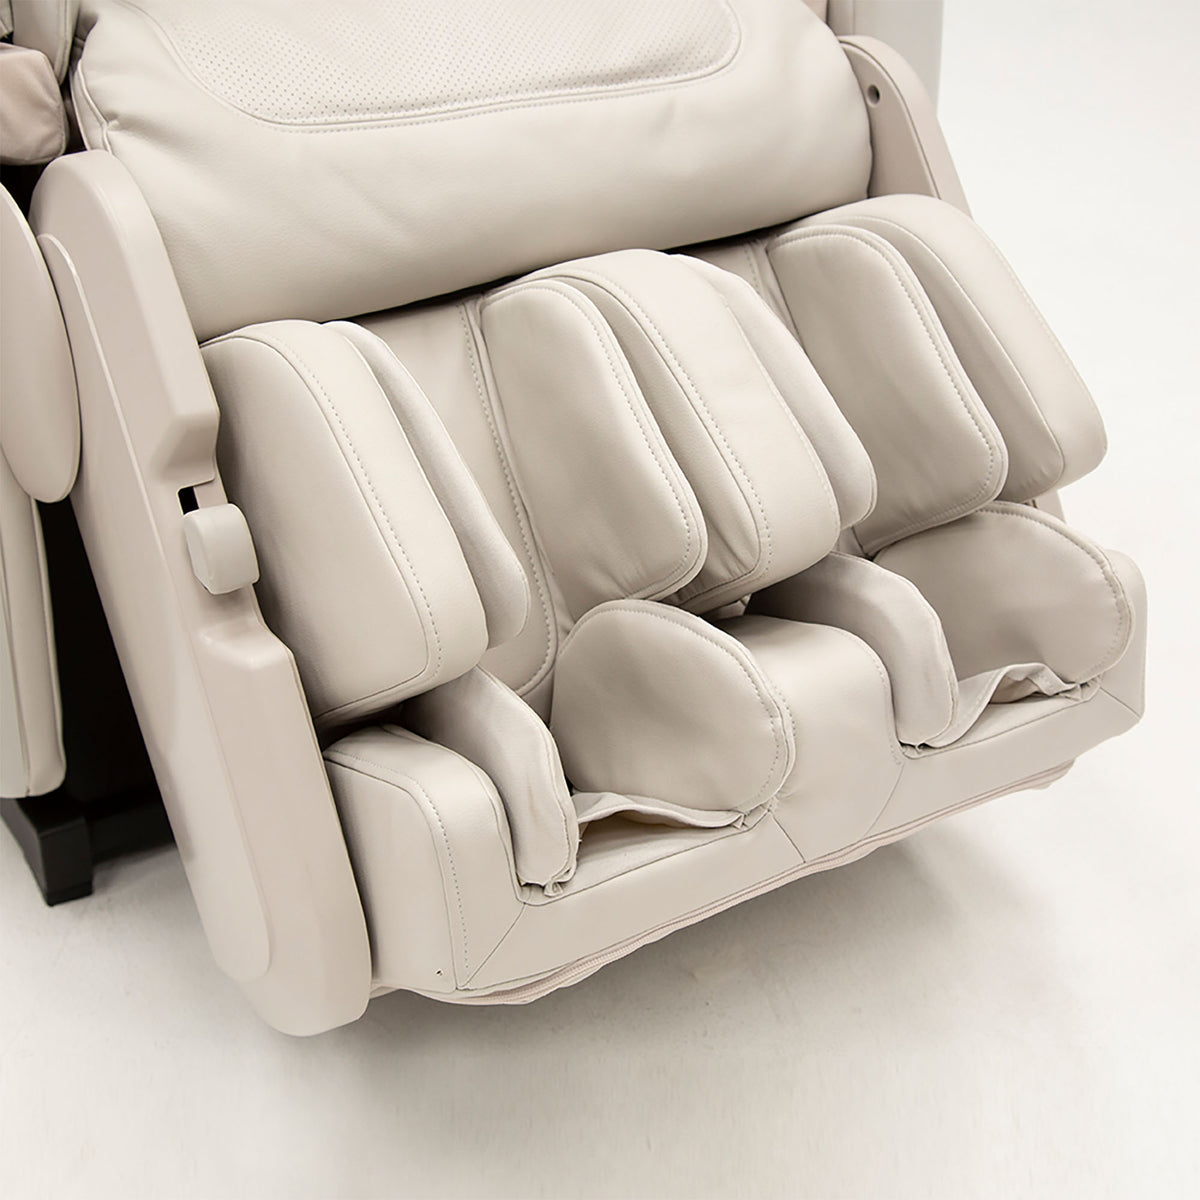 Synca Kagra Premium Massage Chair